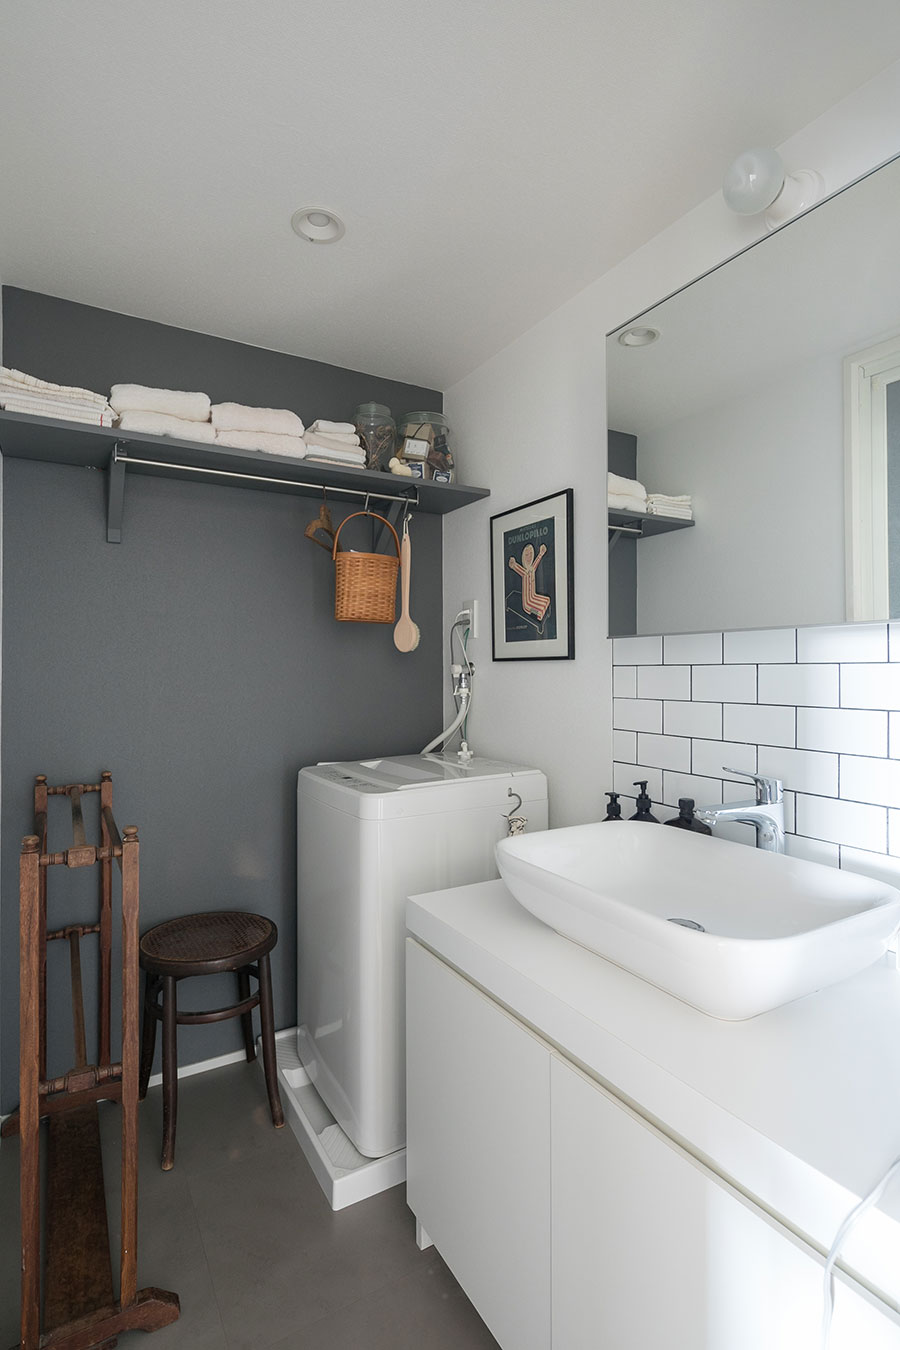 洗面所の壁にDIYで棚をつけ、壁と同色にペイント。上にはタオルや石鹸のストックを。